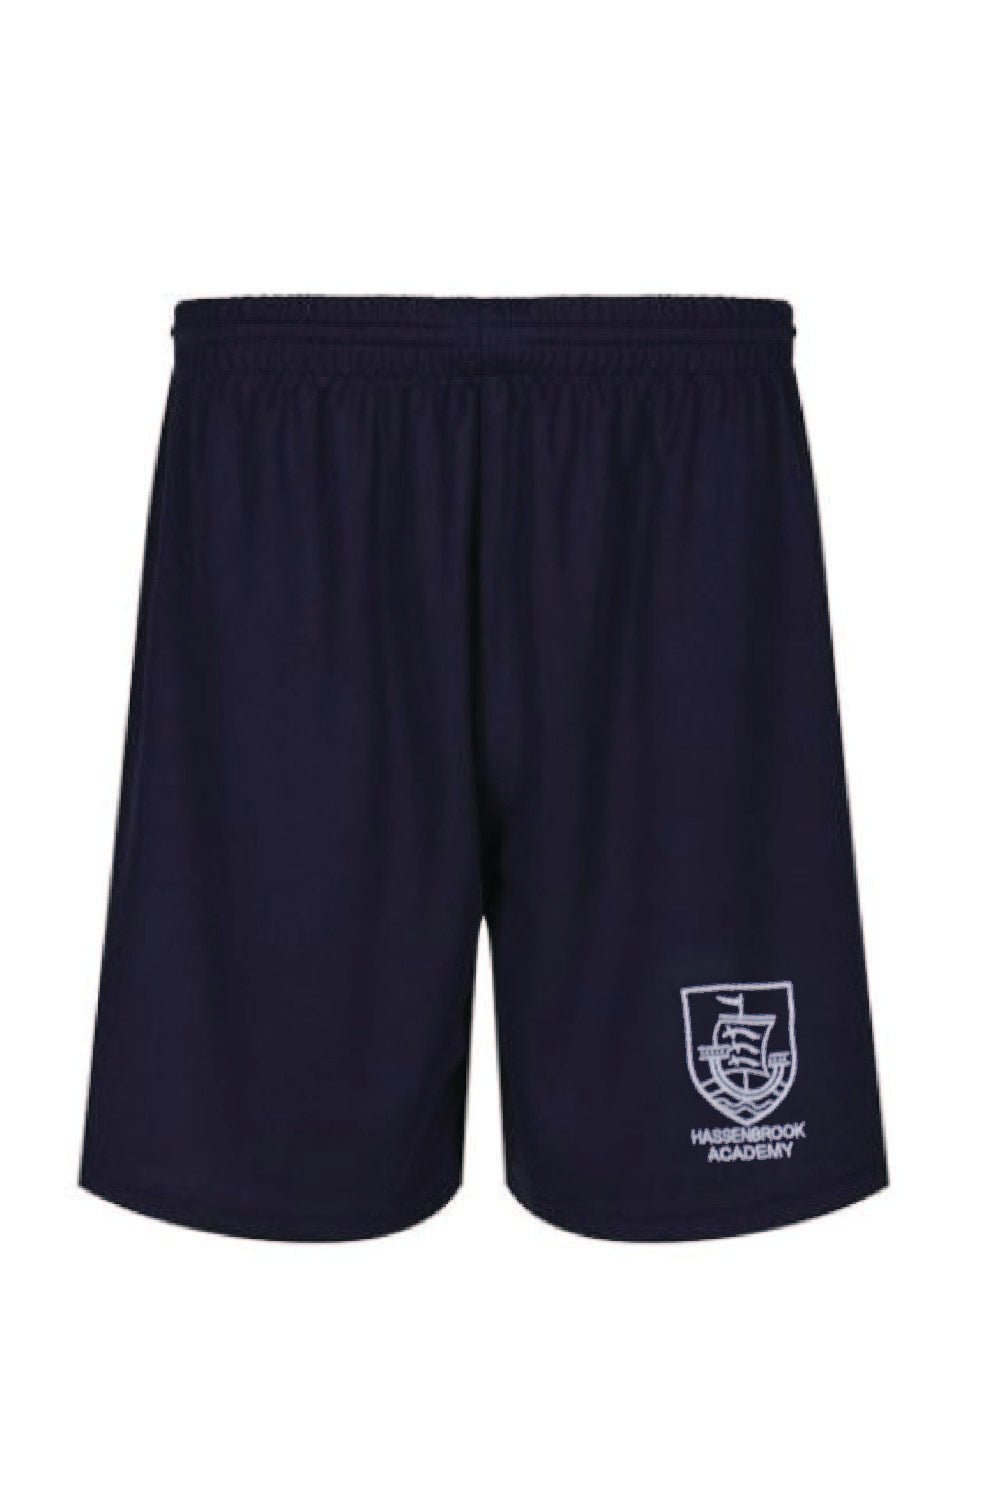 Hassenbrook School PE Short - Uniformwise Schoolwear